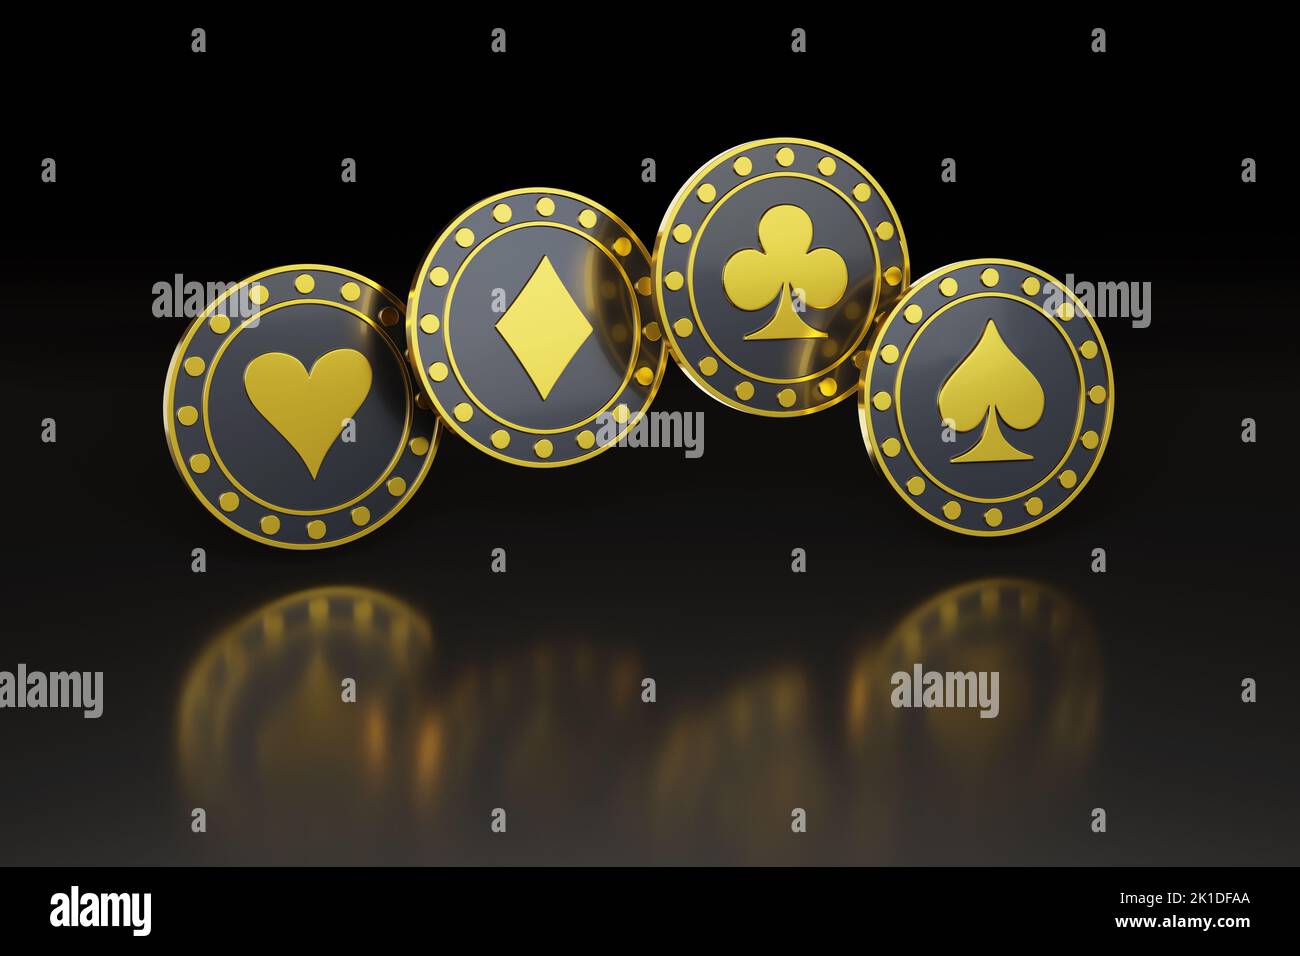 Golden poker chips on dark background. 3d illustration. Stock Photo